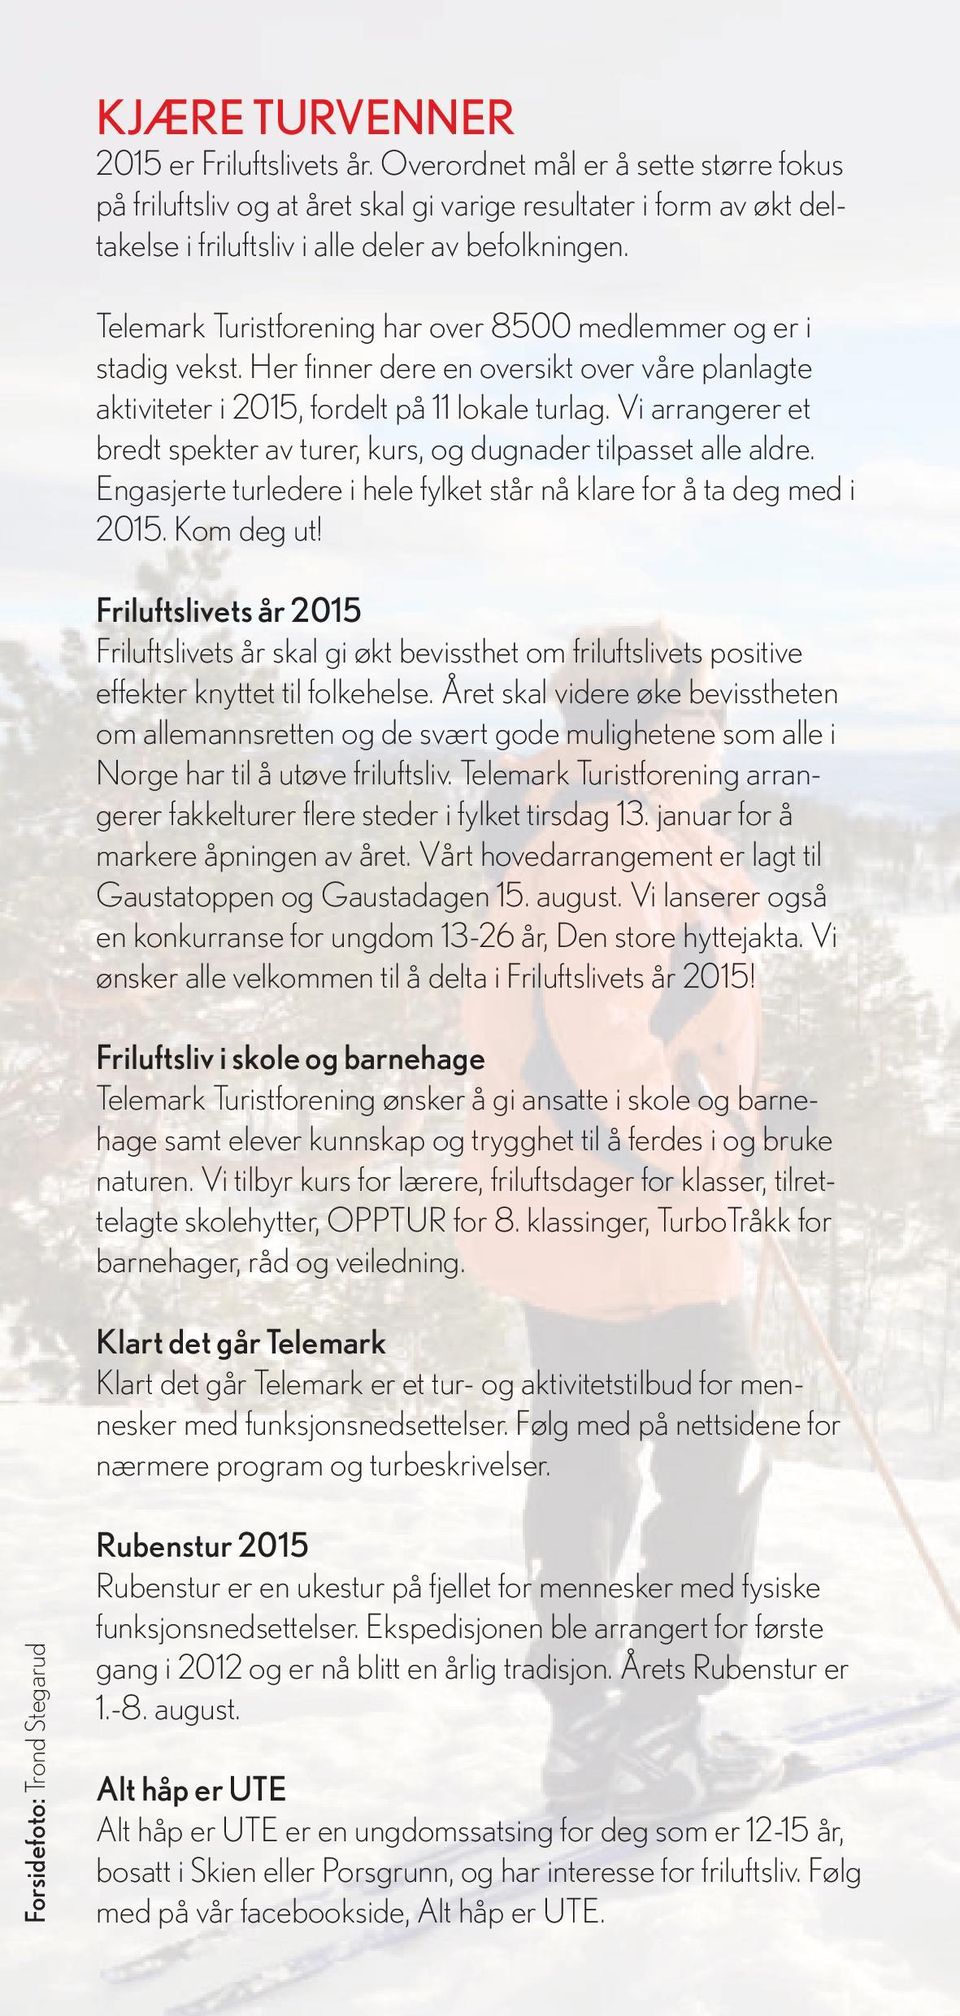 Telemark Turistforening har over 8500 medlemmer og er i stadig vekst. Her fi nner dere en oversikt over våre planlagte aktiviteter i 2015, fordelt på 11 lokale turlag.